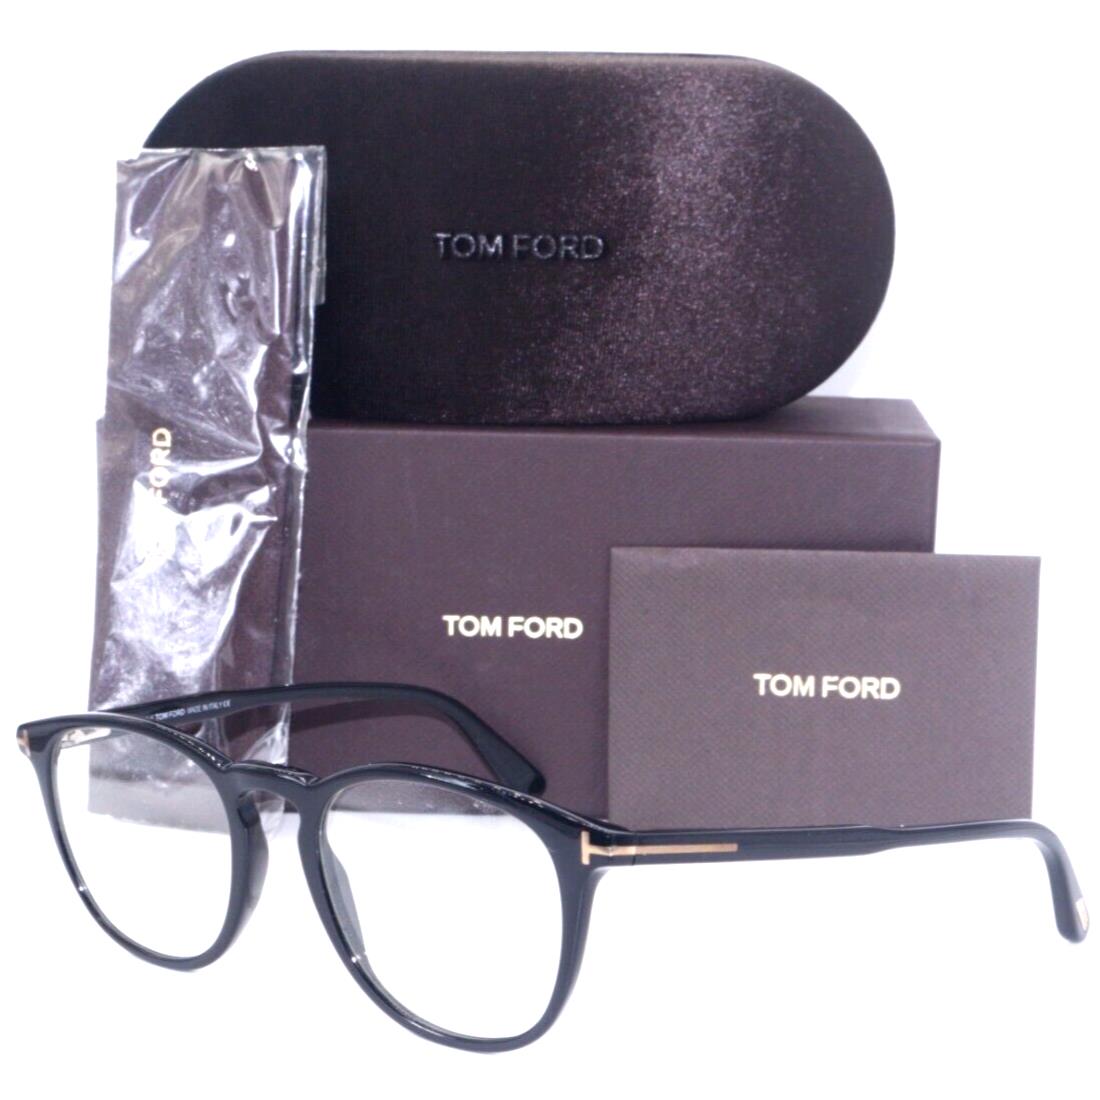 Tom Ford TF 5401-A 01V Round Black Gold Frames Eyeglasses 51-20